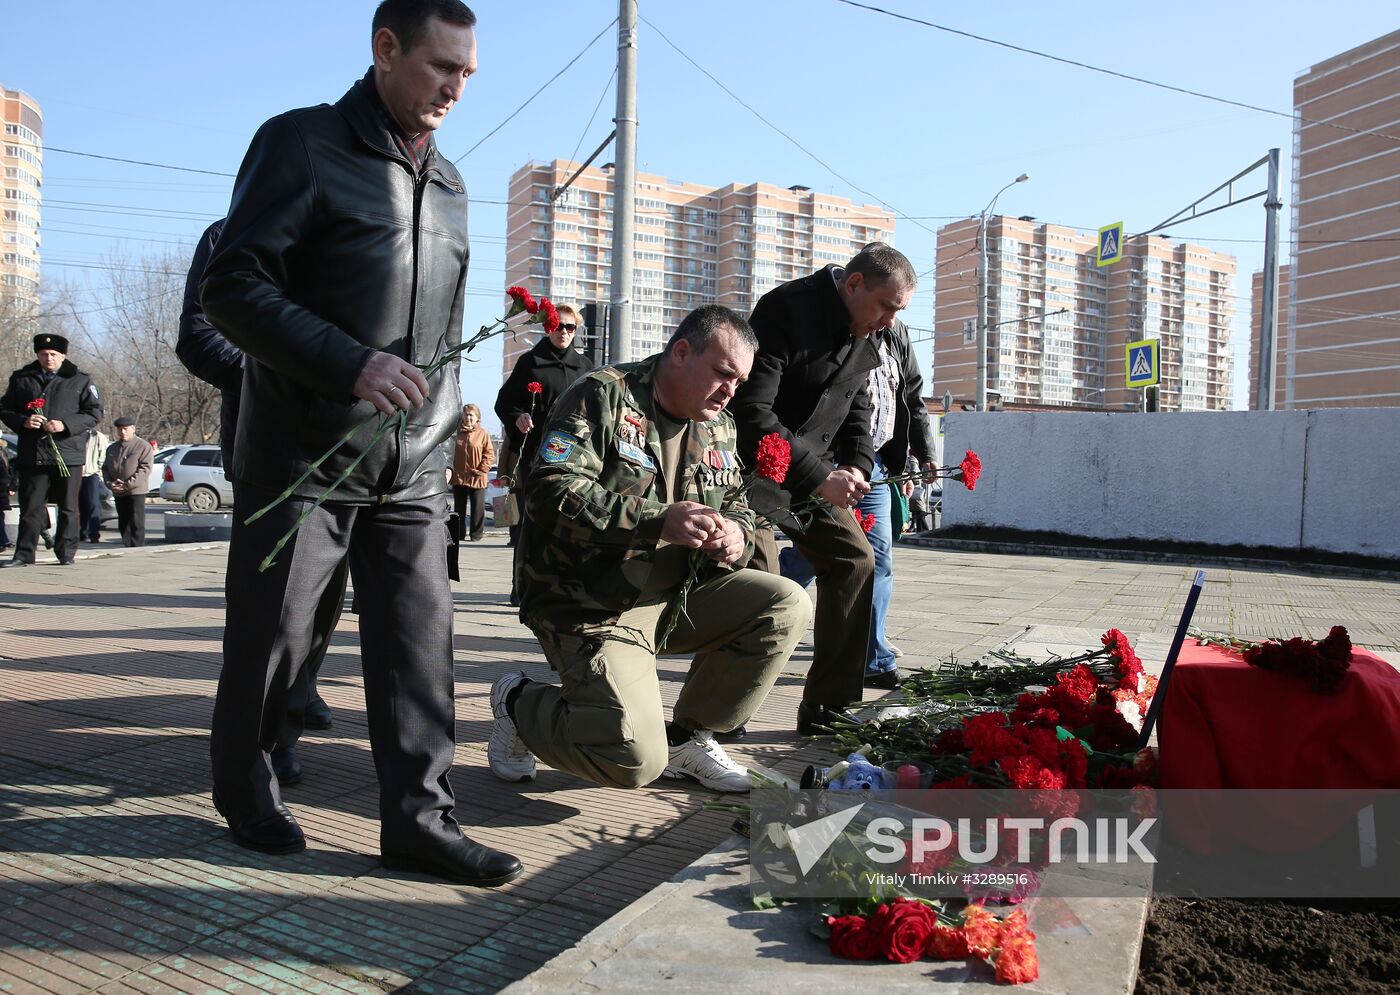 Commemorative event for pilot Roman Filipov who died in Syria